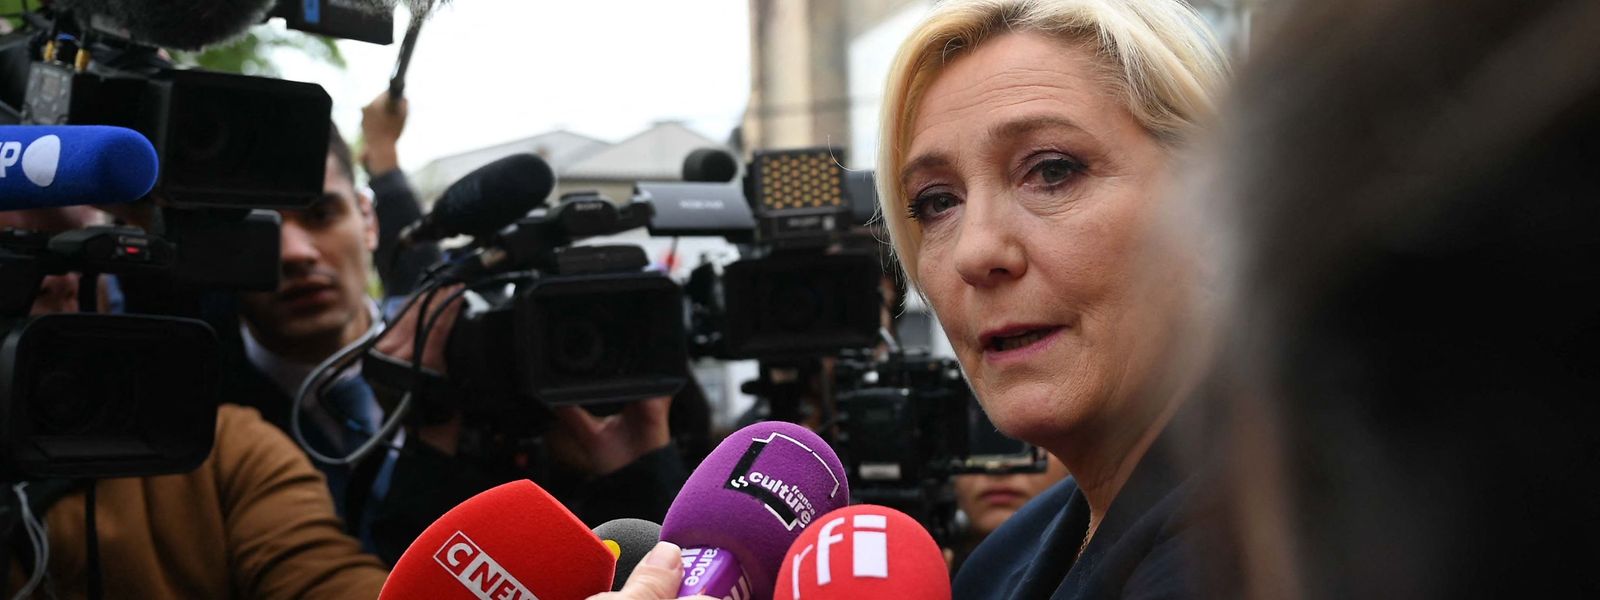 Réélue haut la main dans le Pas-de-Calais, Marine Le Pen pourrait disposer de 80 à 95 députés, soit dix à quinze fois plus d'élus qu'actuellement. 